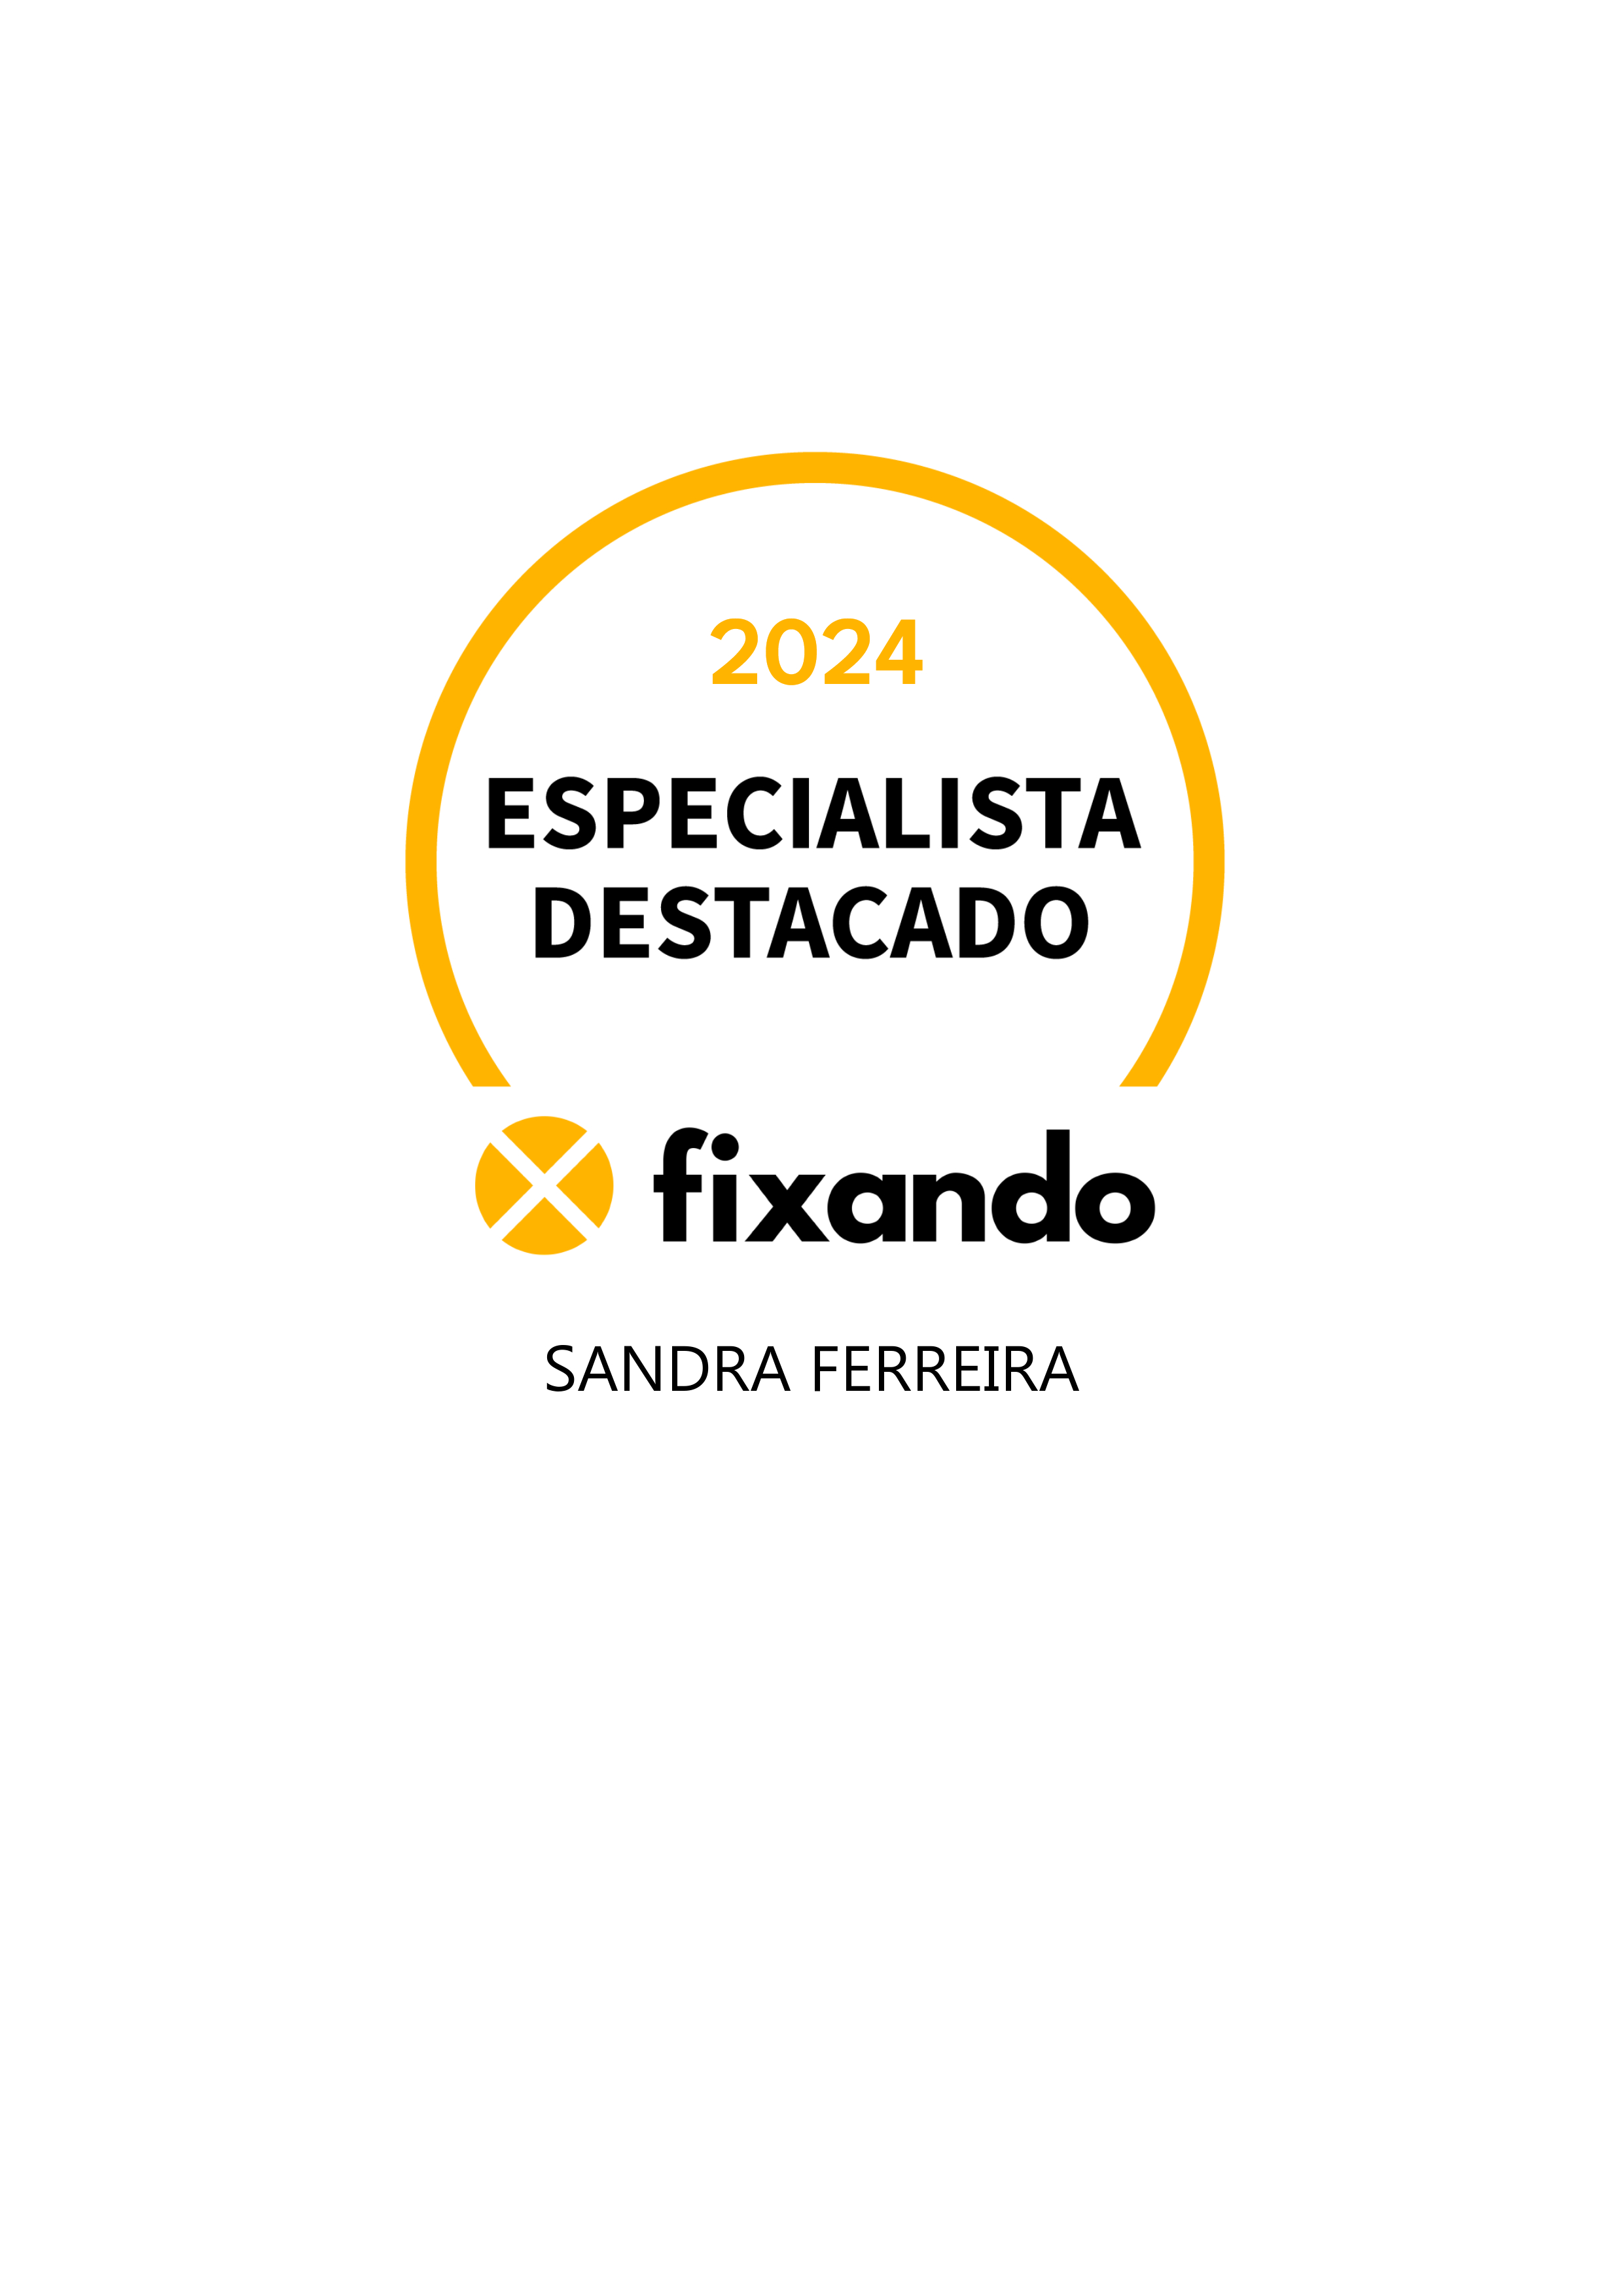 Sandra Ferreira - Santo Tirso - Aconselhamento Espiritual